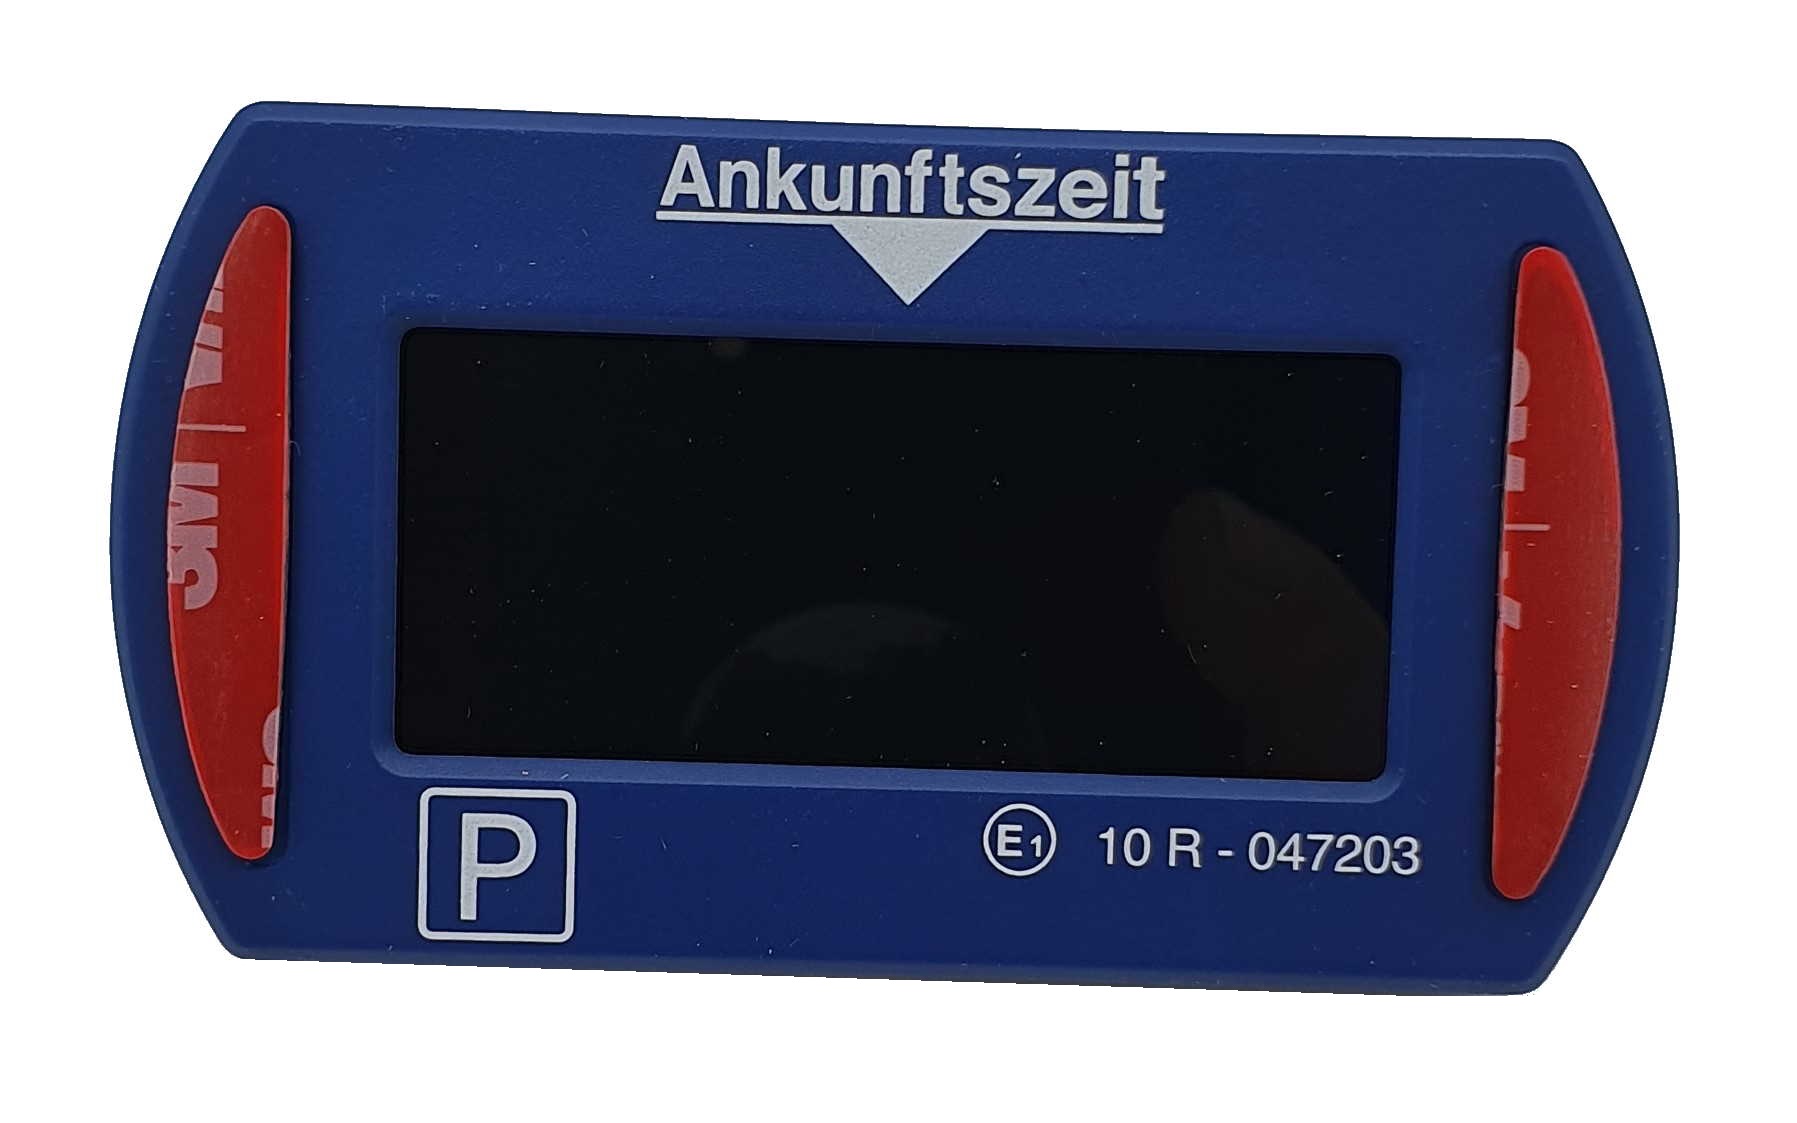 Needit Park Micro blau elektronische Parkscheibe mit Zulassung - DE